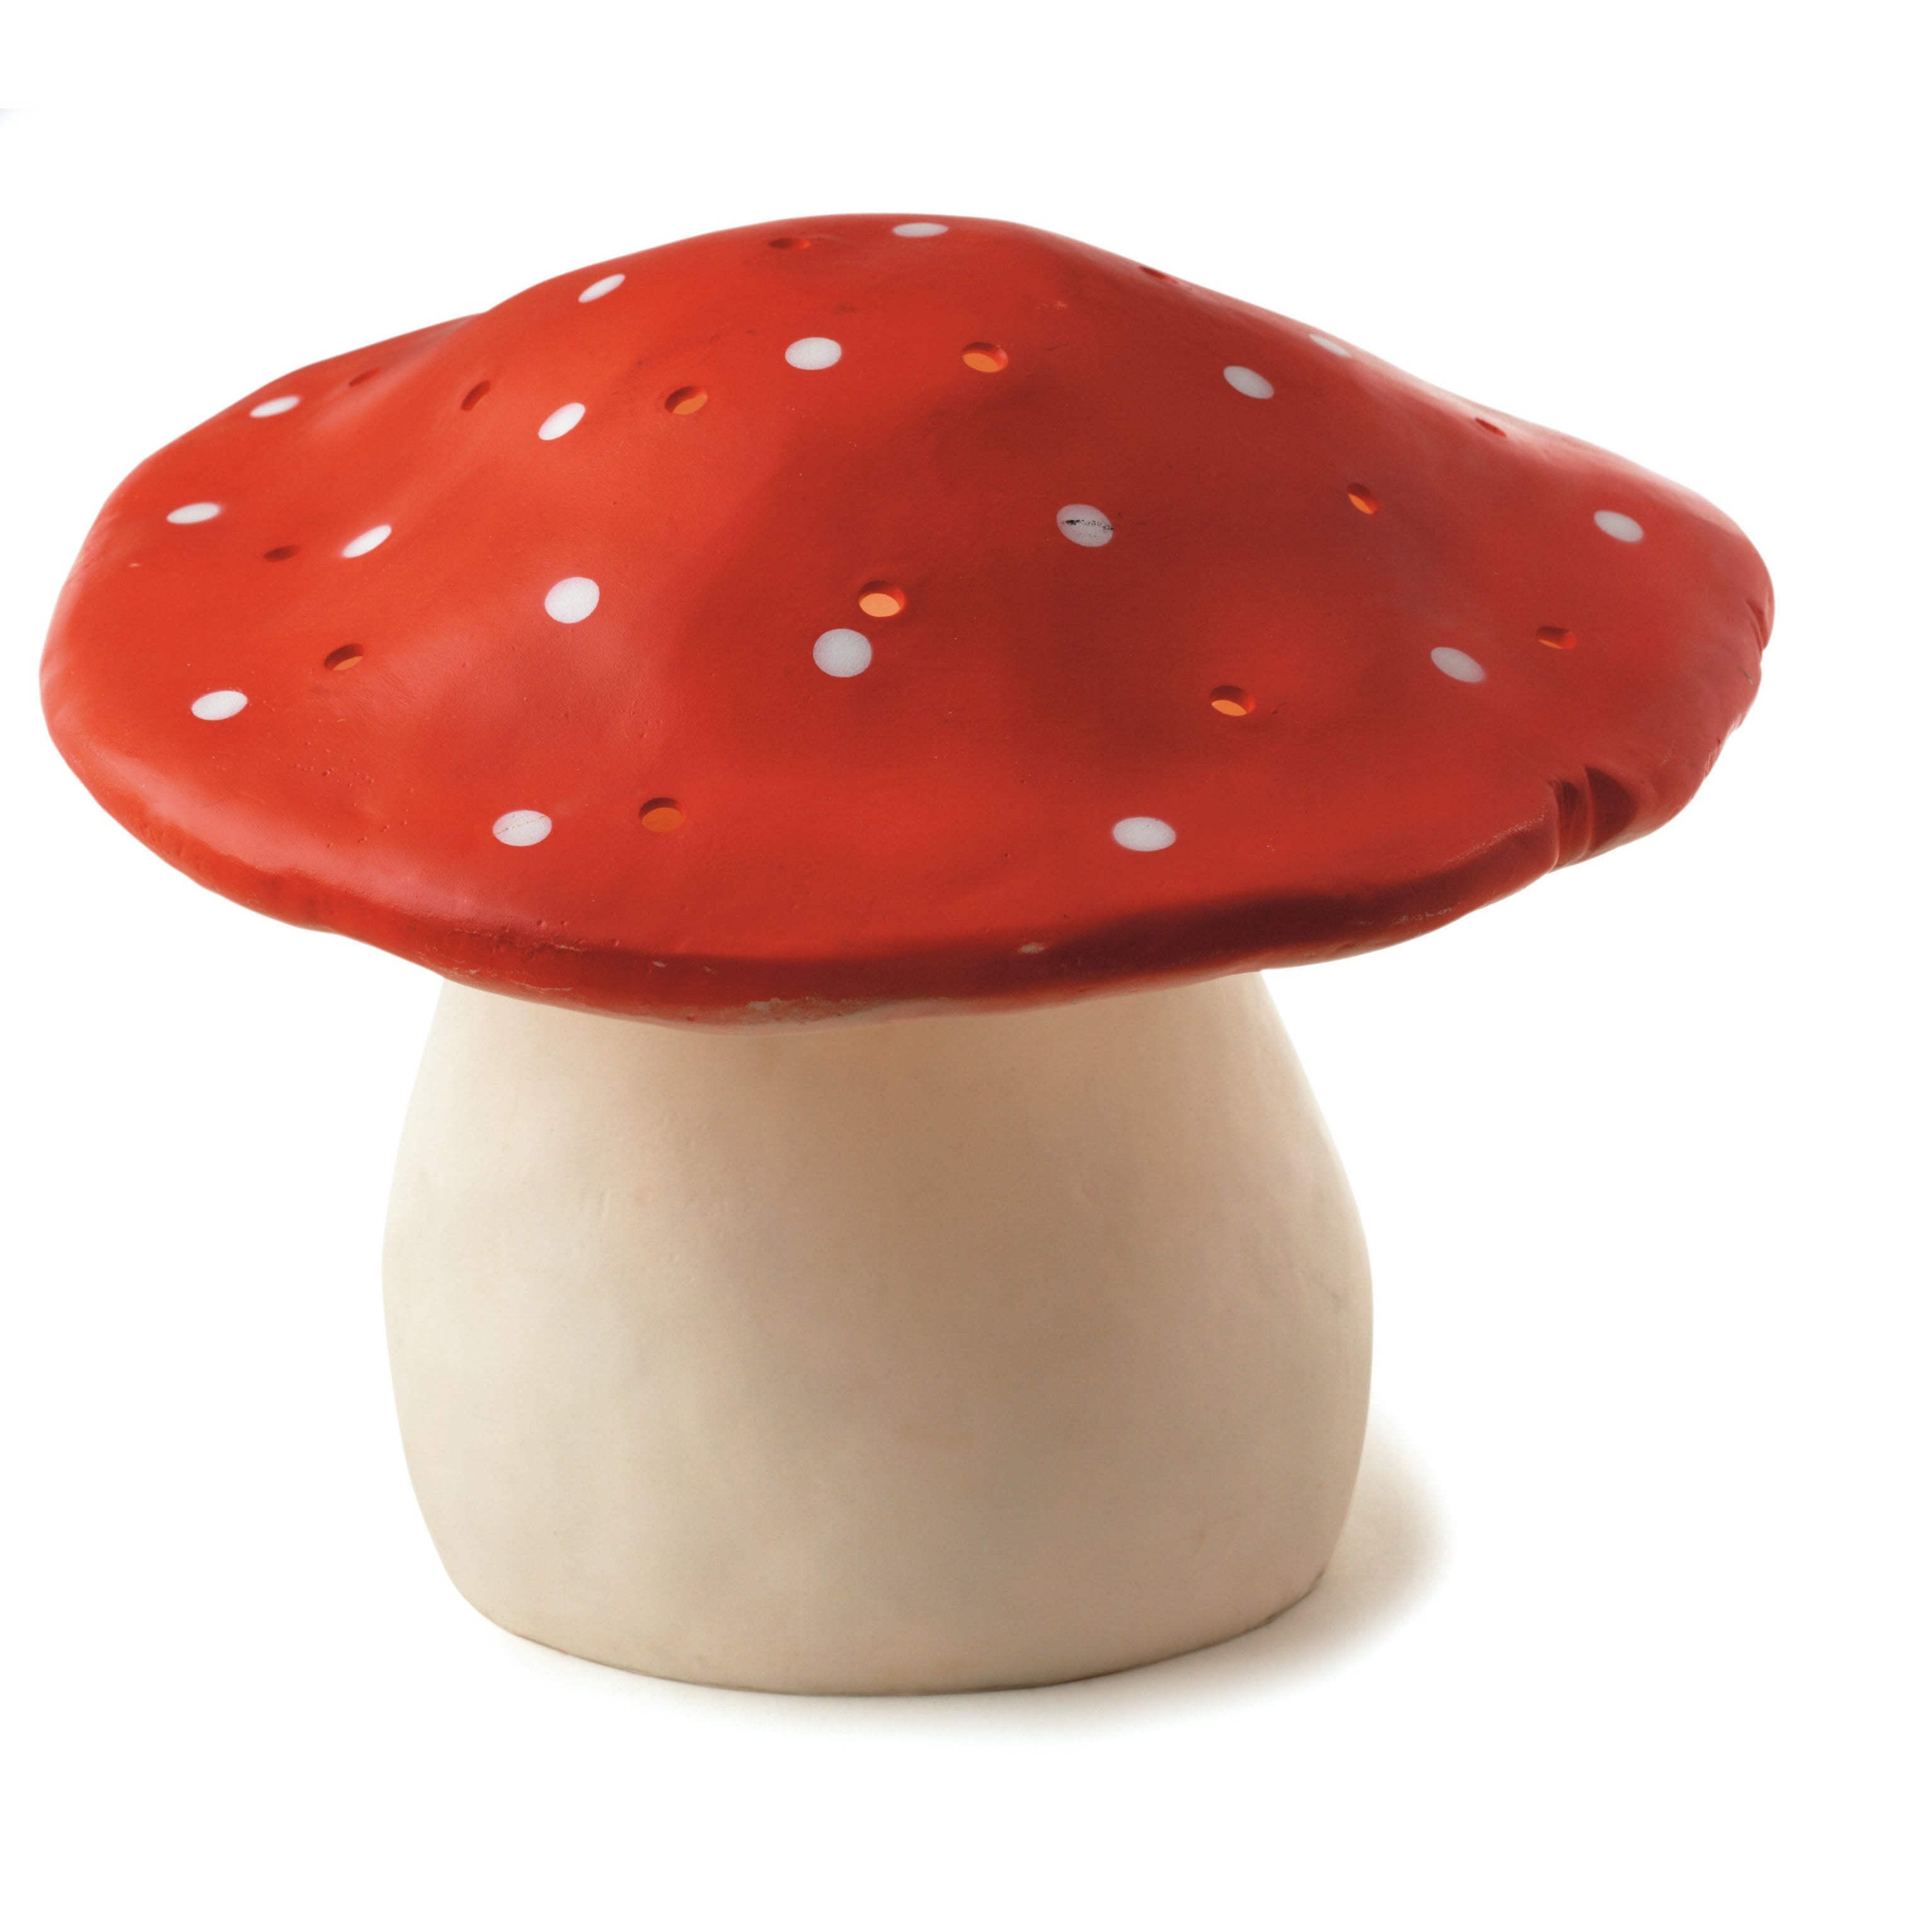 Egmont Lamp - Large Mushrooms w/ Plug Night Lights